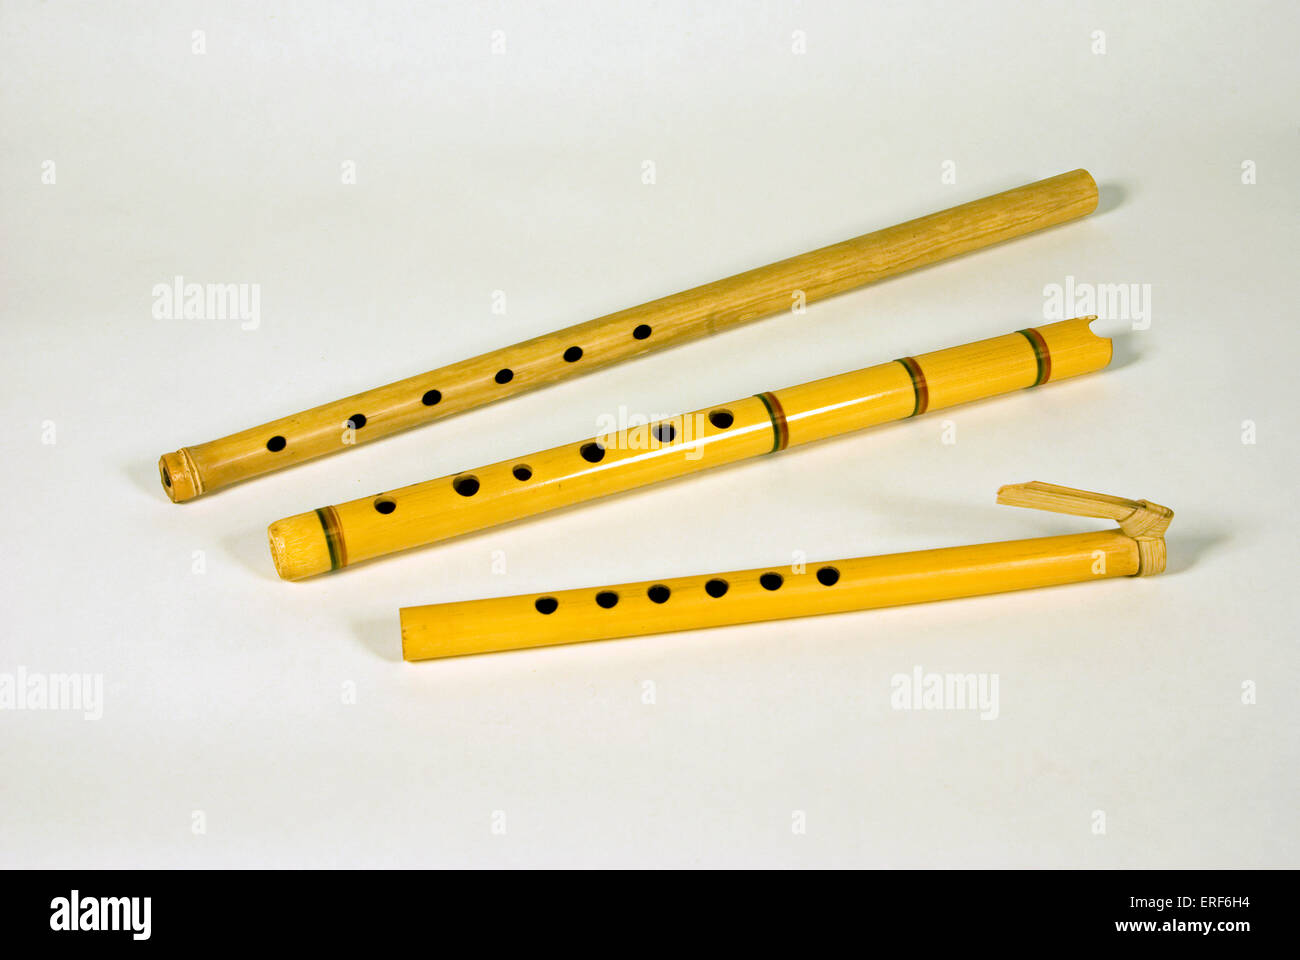 Tres quenas, flautas andina tradicional, usada comúnmente en todos los  ámbitos de la música tradicional peruana. A menudo llamado la flauta de los  Incas Fotografía de stock - Alamy